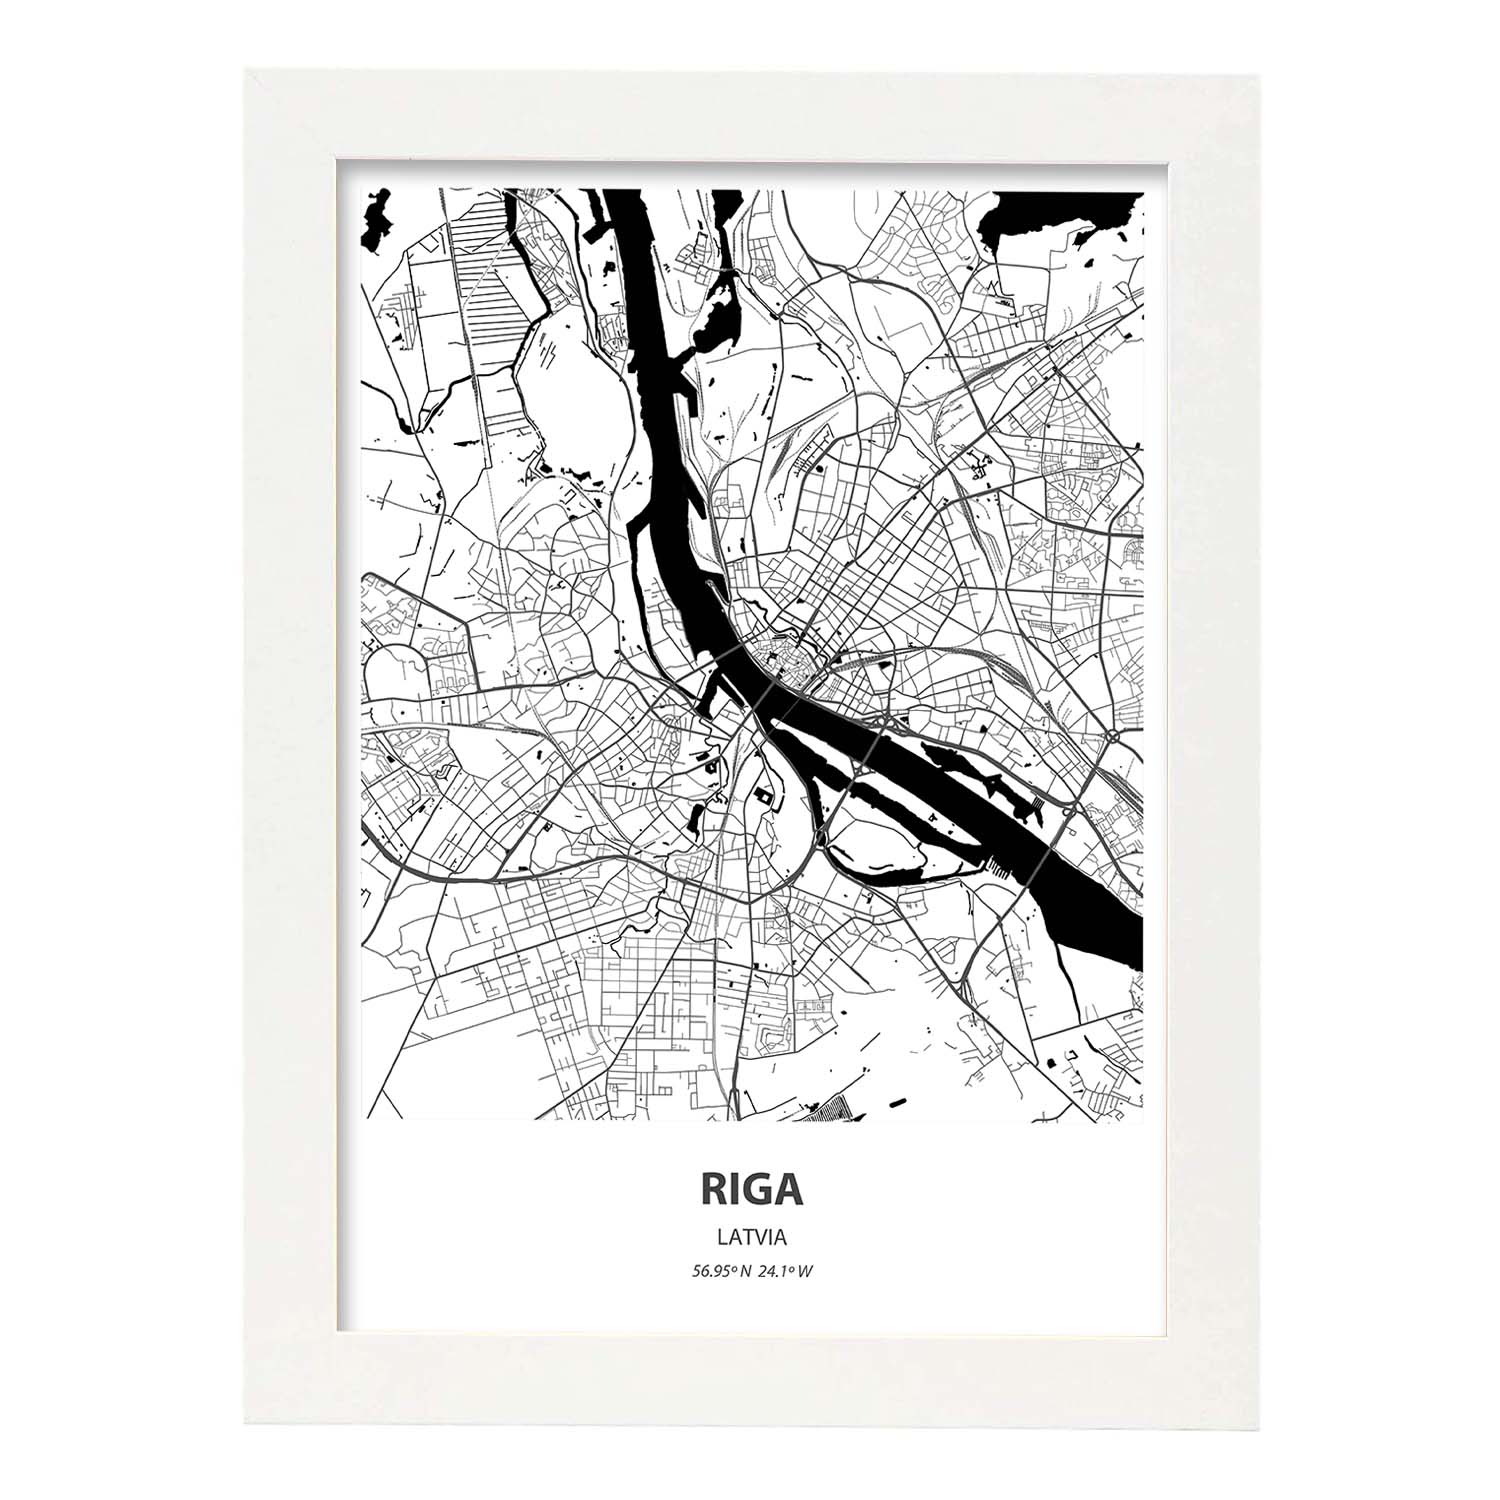 Poster con mapa de Riga - Latvia. Láminas de ciudades de Europa con mares y ríos en color negro.-Artwork-Nacnic-A3-Marco Blanco-Nacnic Estudio SL